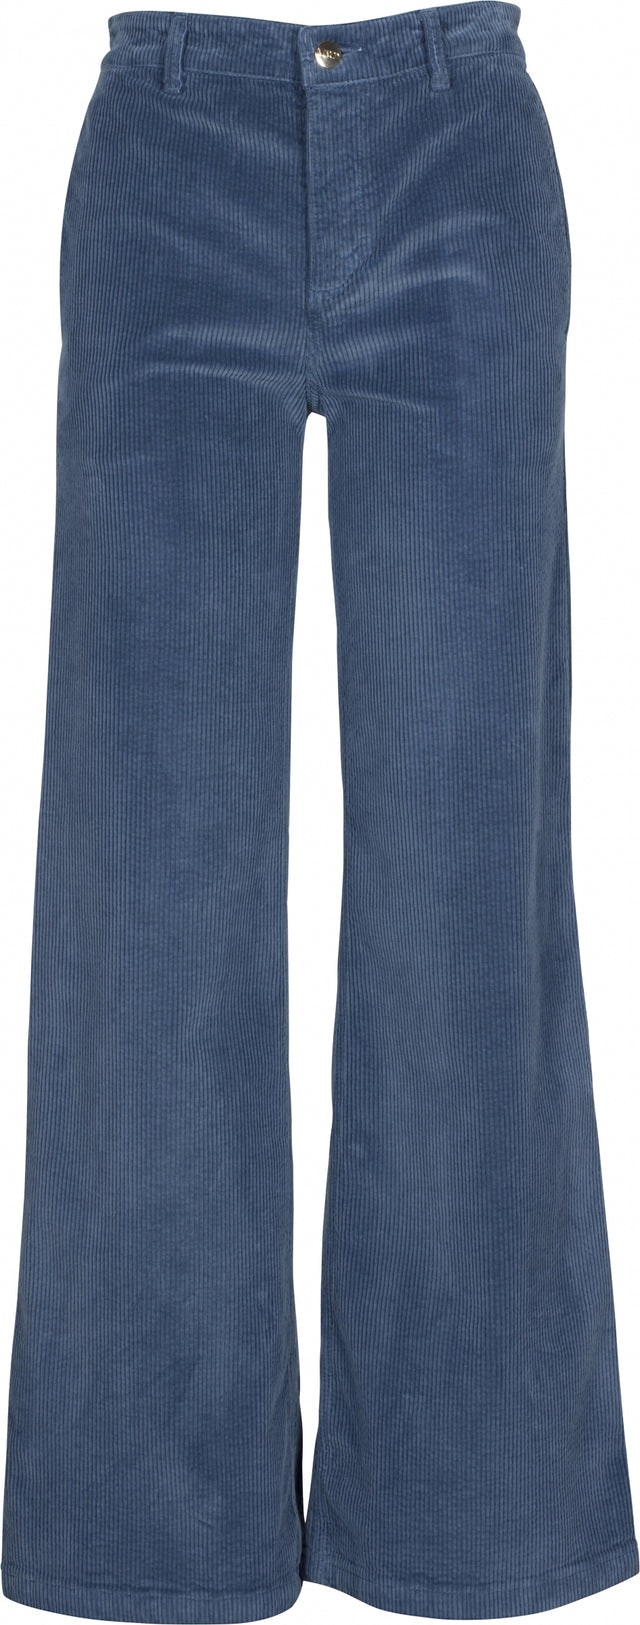 Cord Flared Pant - Vintage Indigo - MAUD - Bukser & Shorts - VILLOID.no